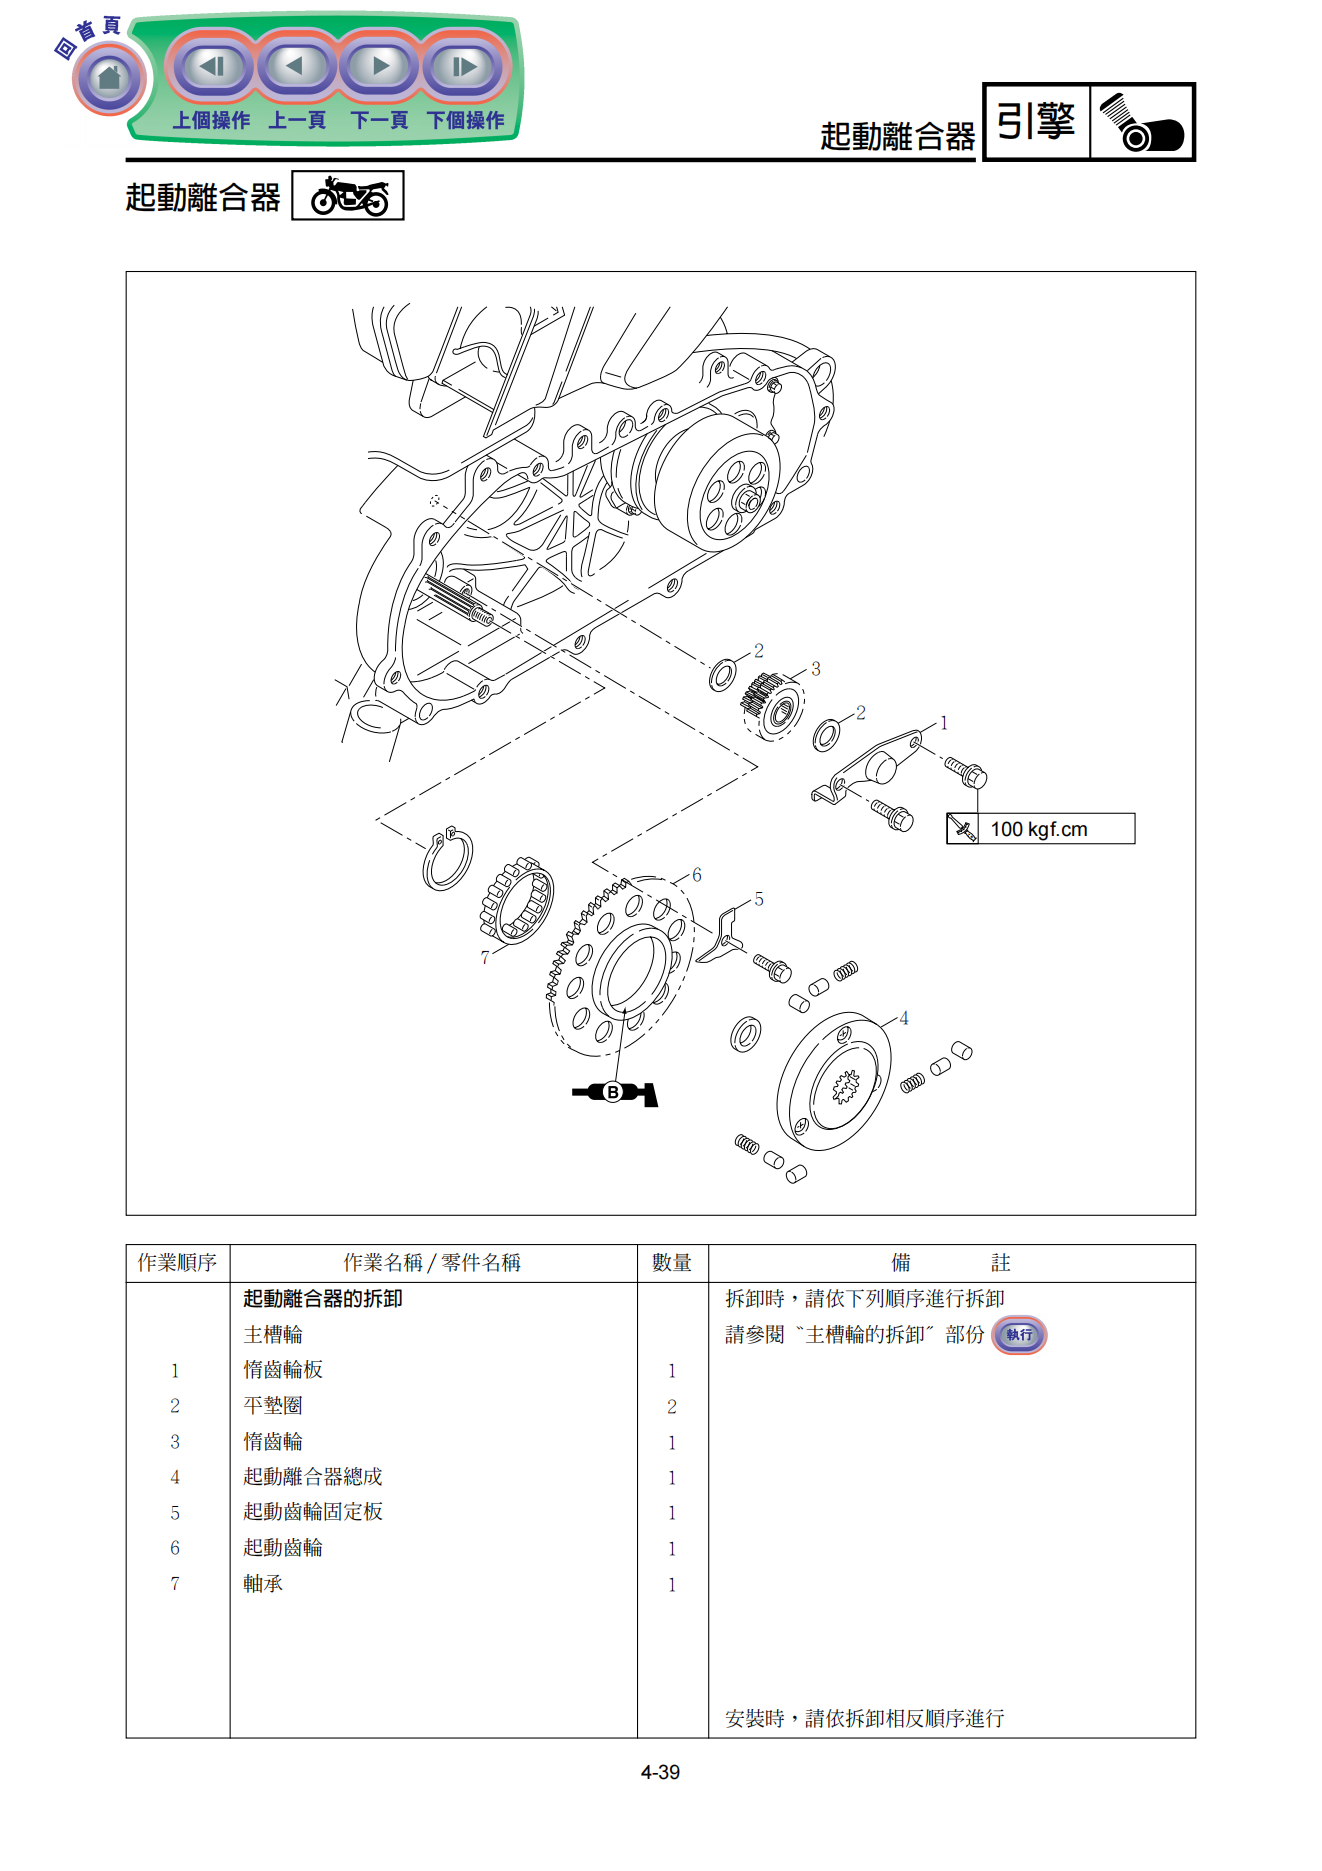 繁体中文雅马哈NXC125T劲战一代目维修手册化油器版插图3